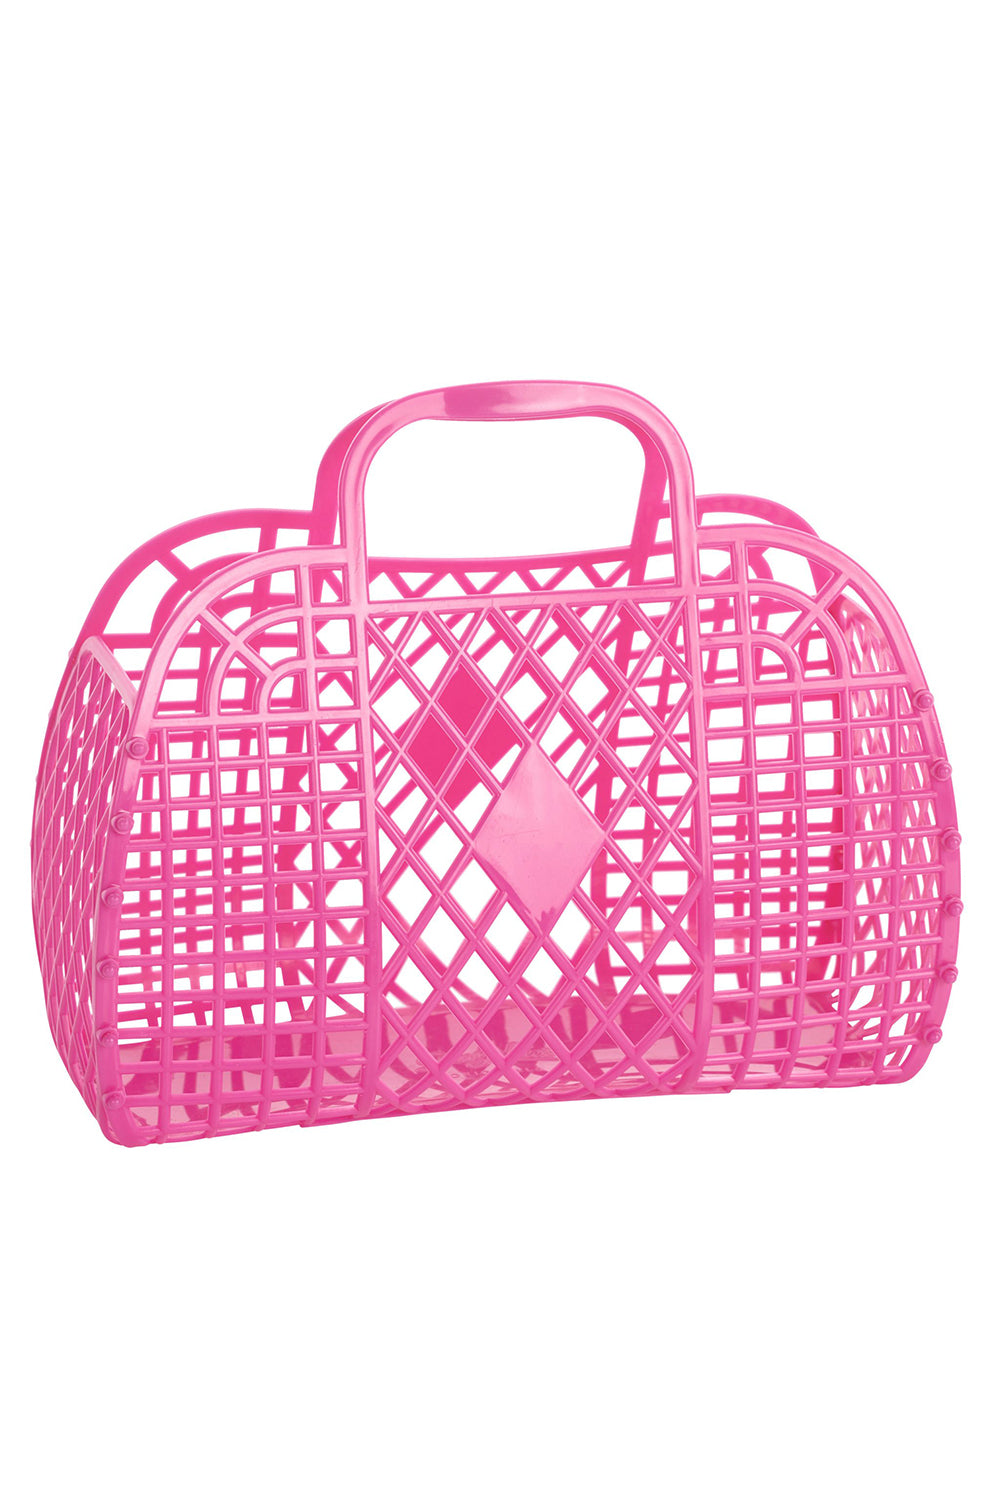 Jellie Retro Basket Bag - Berry Pink